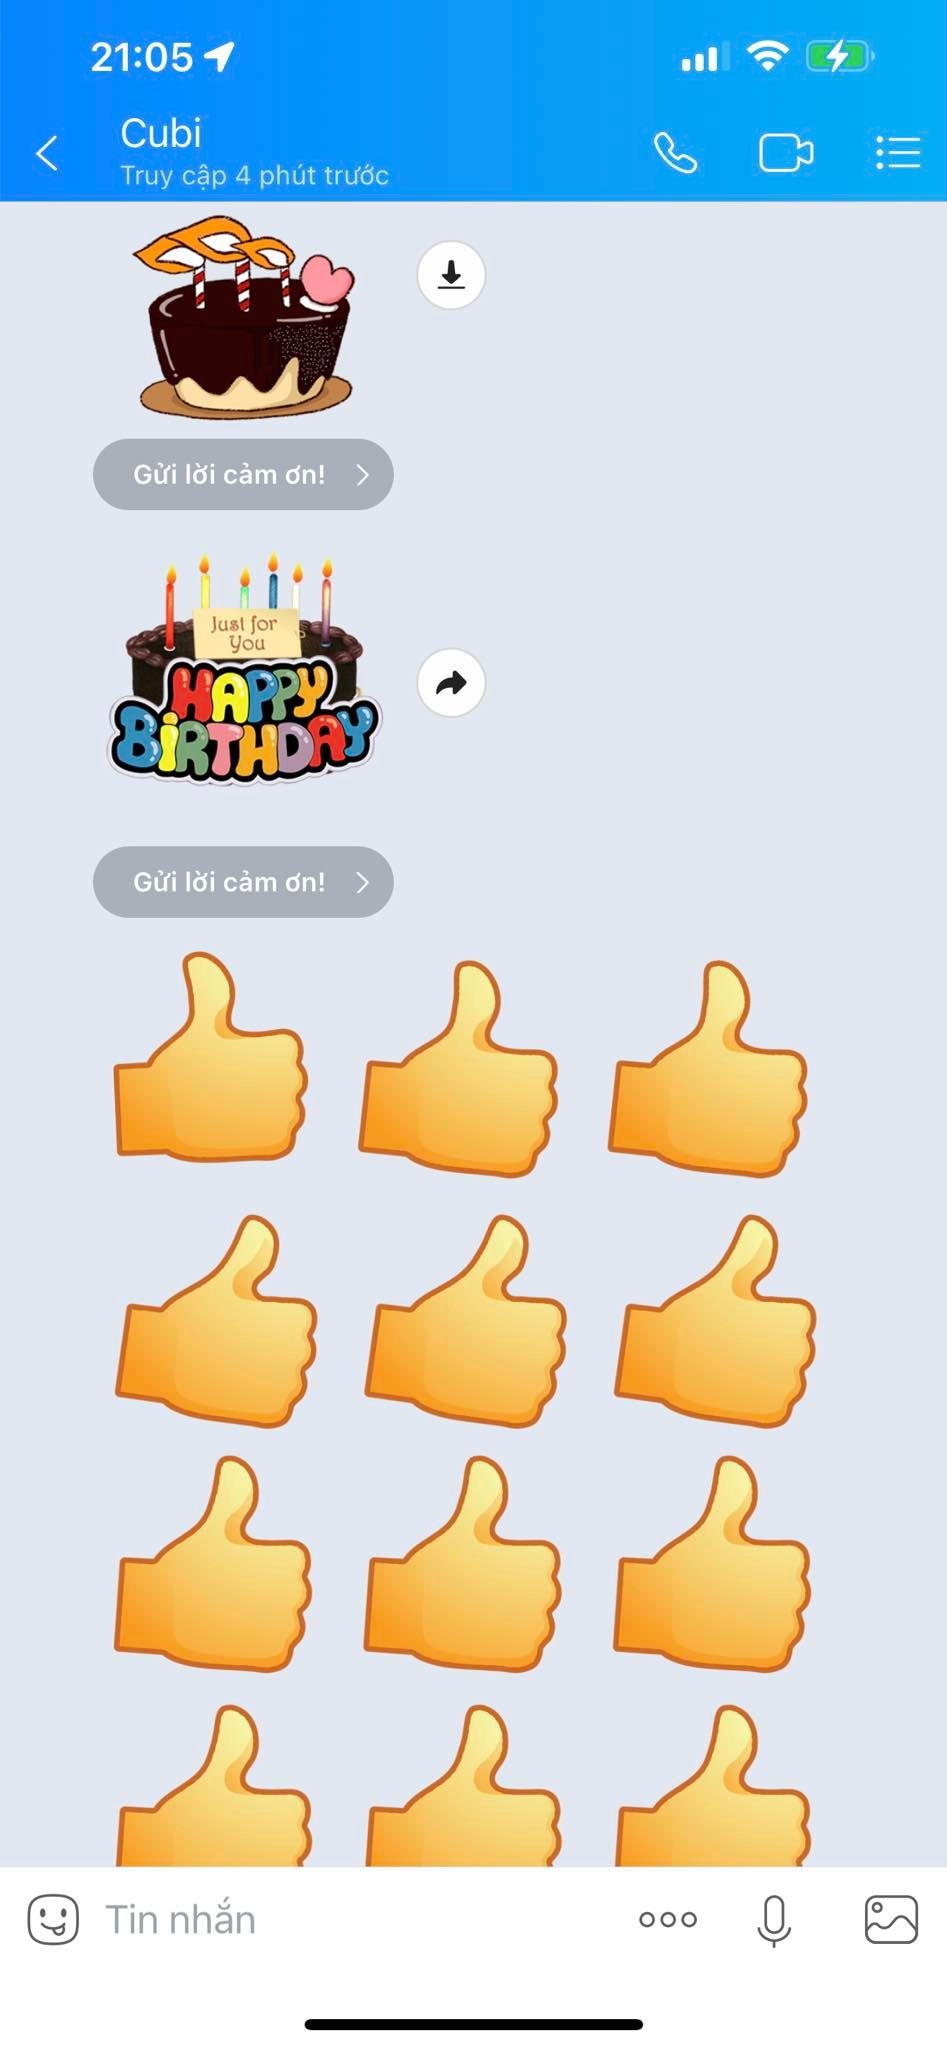 Lâm Khánh Chi xúc động trước tin nhắn chúc mừng sinh nhật của con trai 3 tuổi